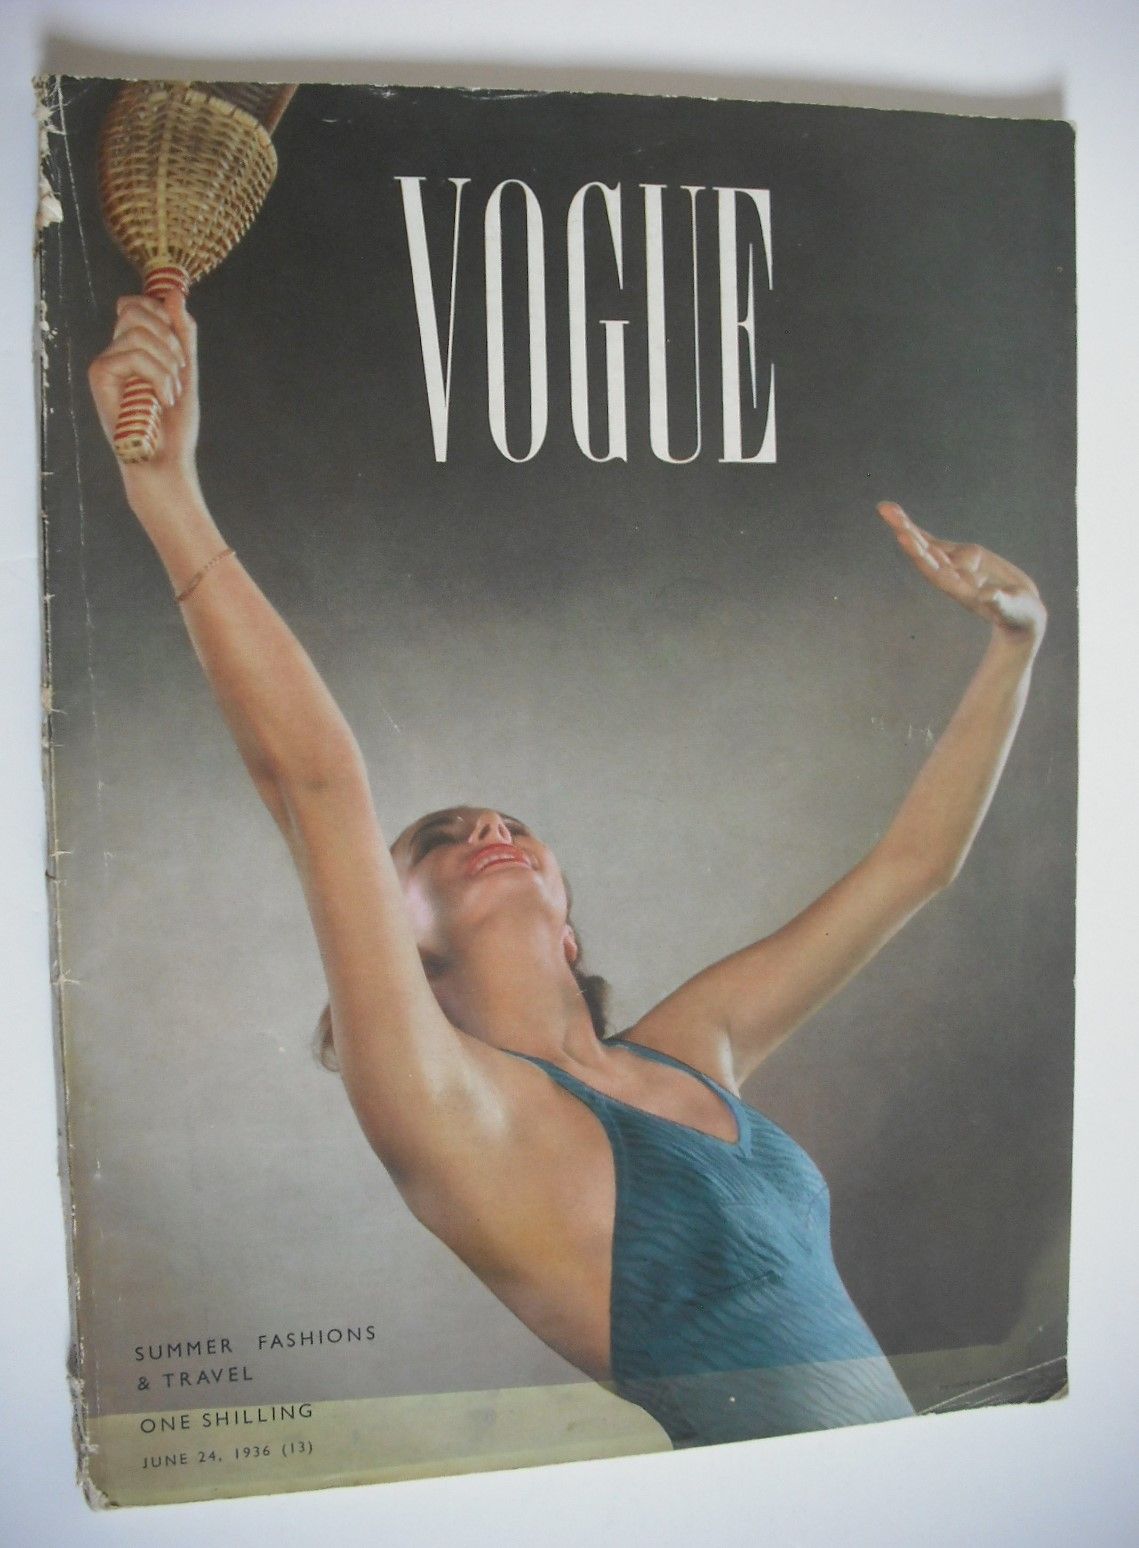 <!--1936-06-24-->British Vogue magazine - 24 June 1936 (Vintage Issue)